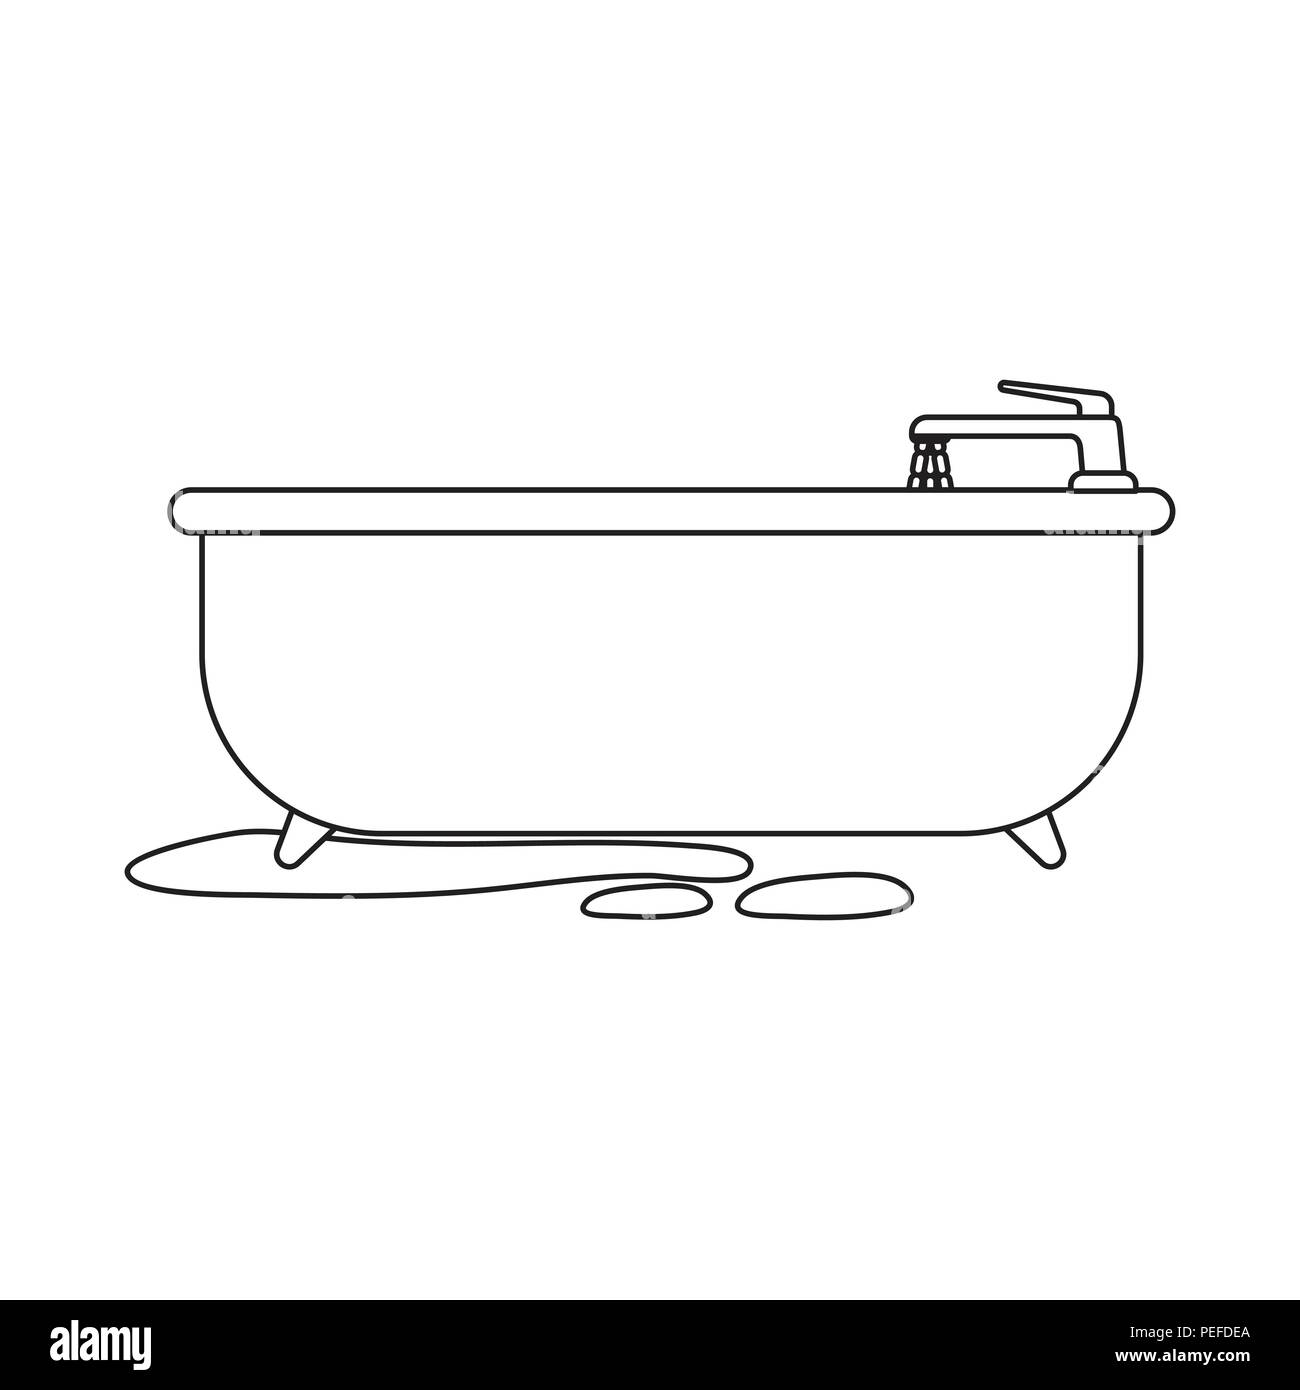 how to draw a bath